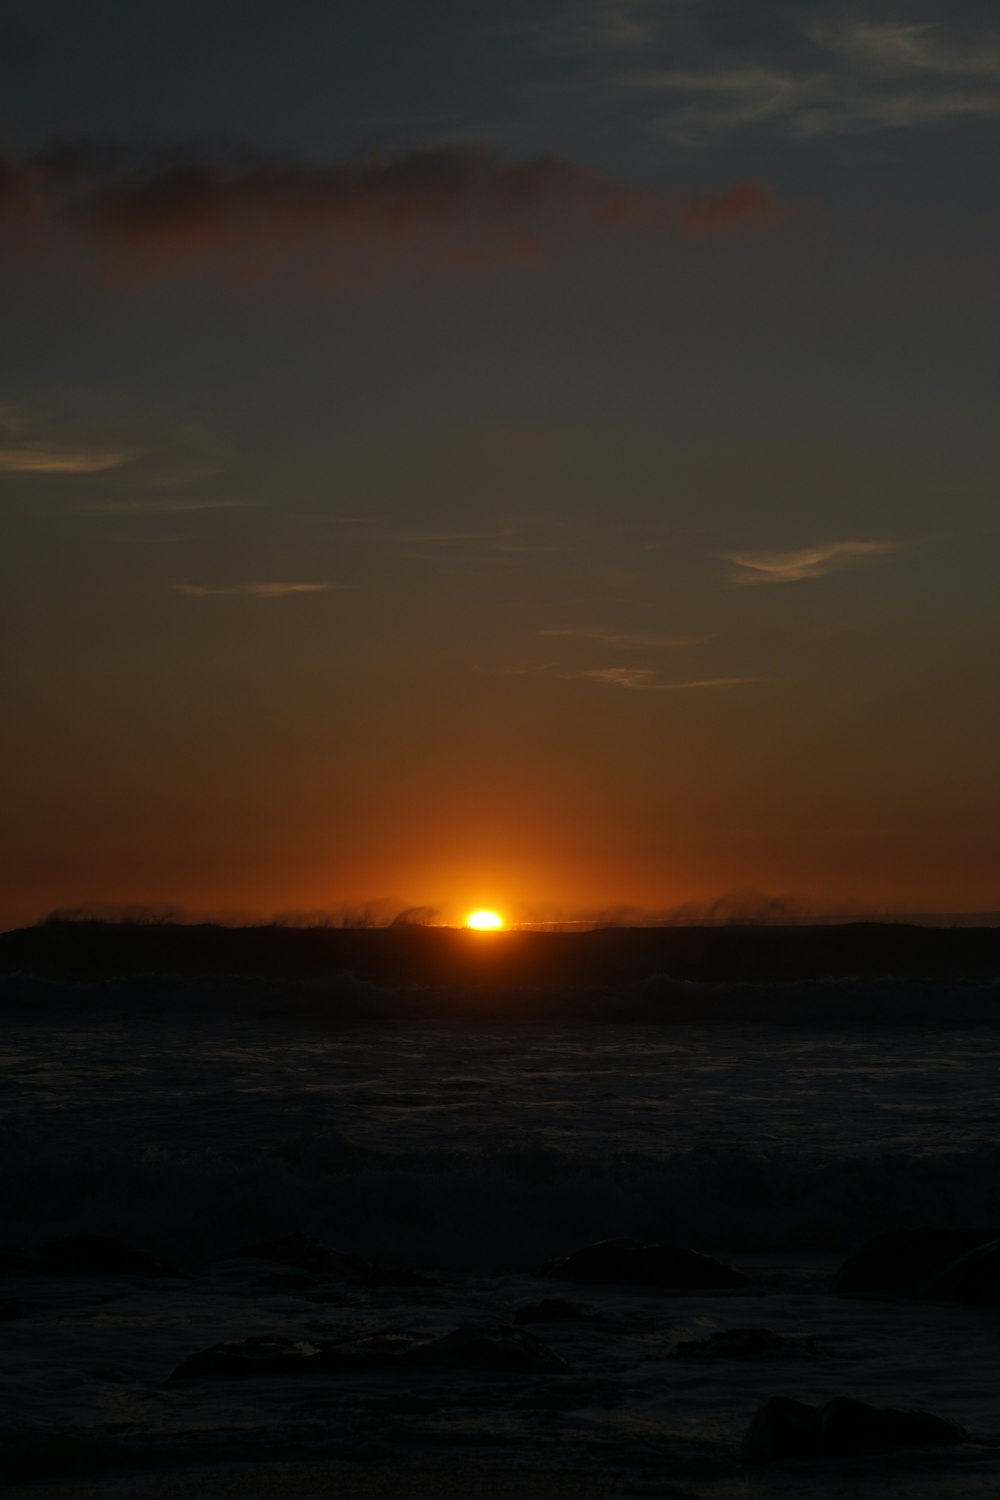 O sol está se pondo sobre o oceano em um dia nublado